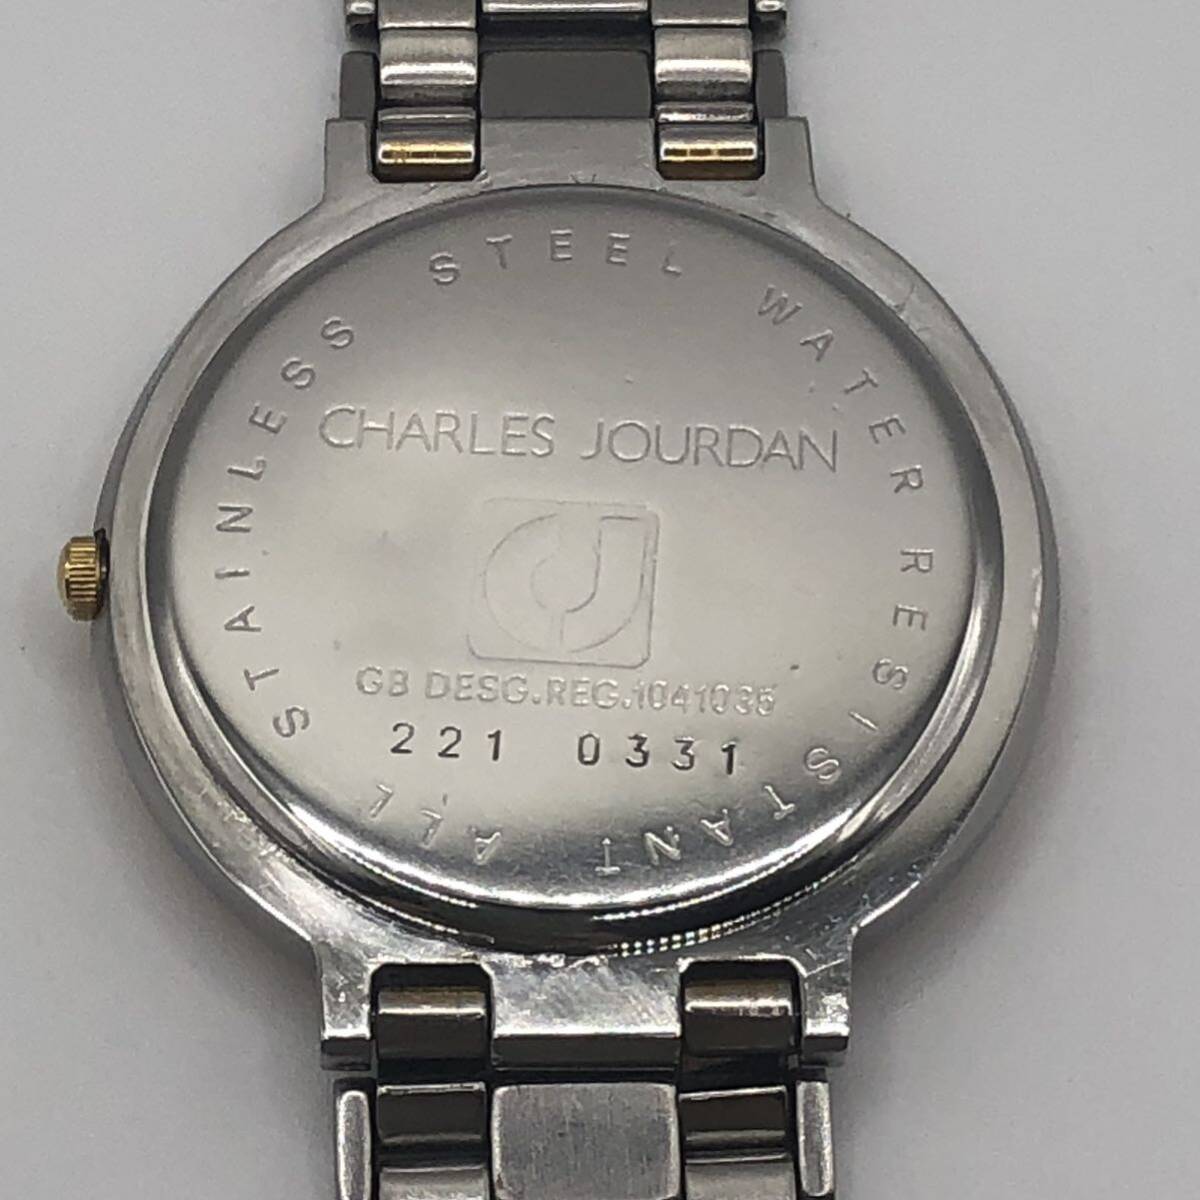  Charles Jourdan CHARLES JOURDAN 221 0331 наручные часы работа товар A-025